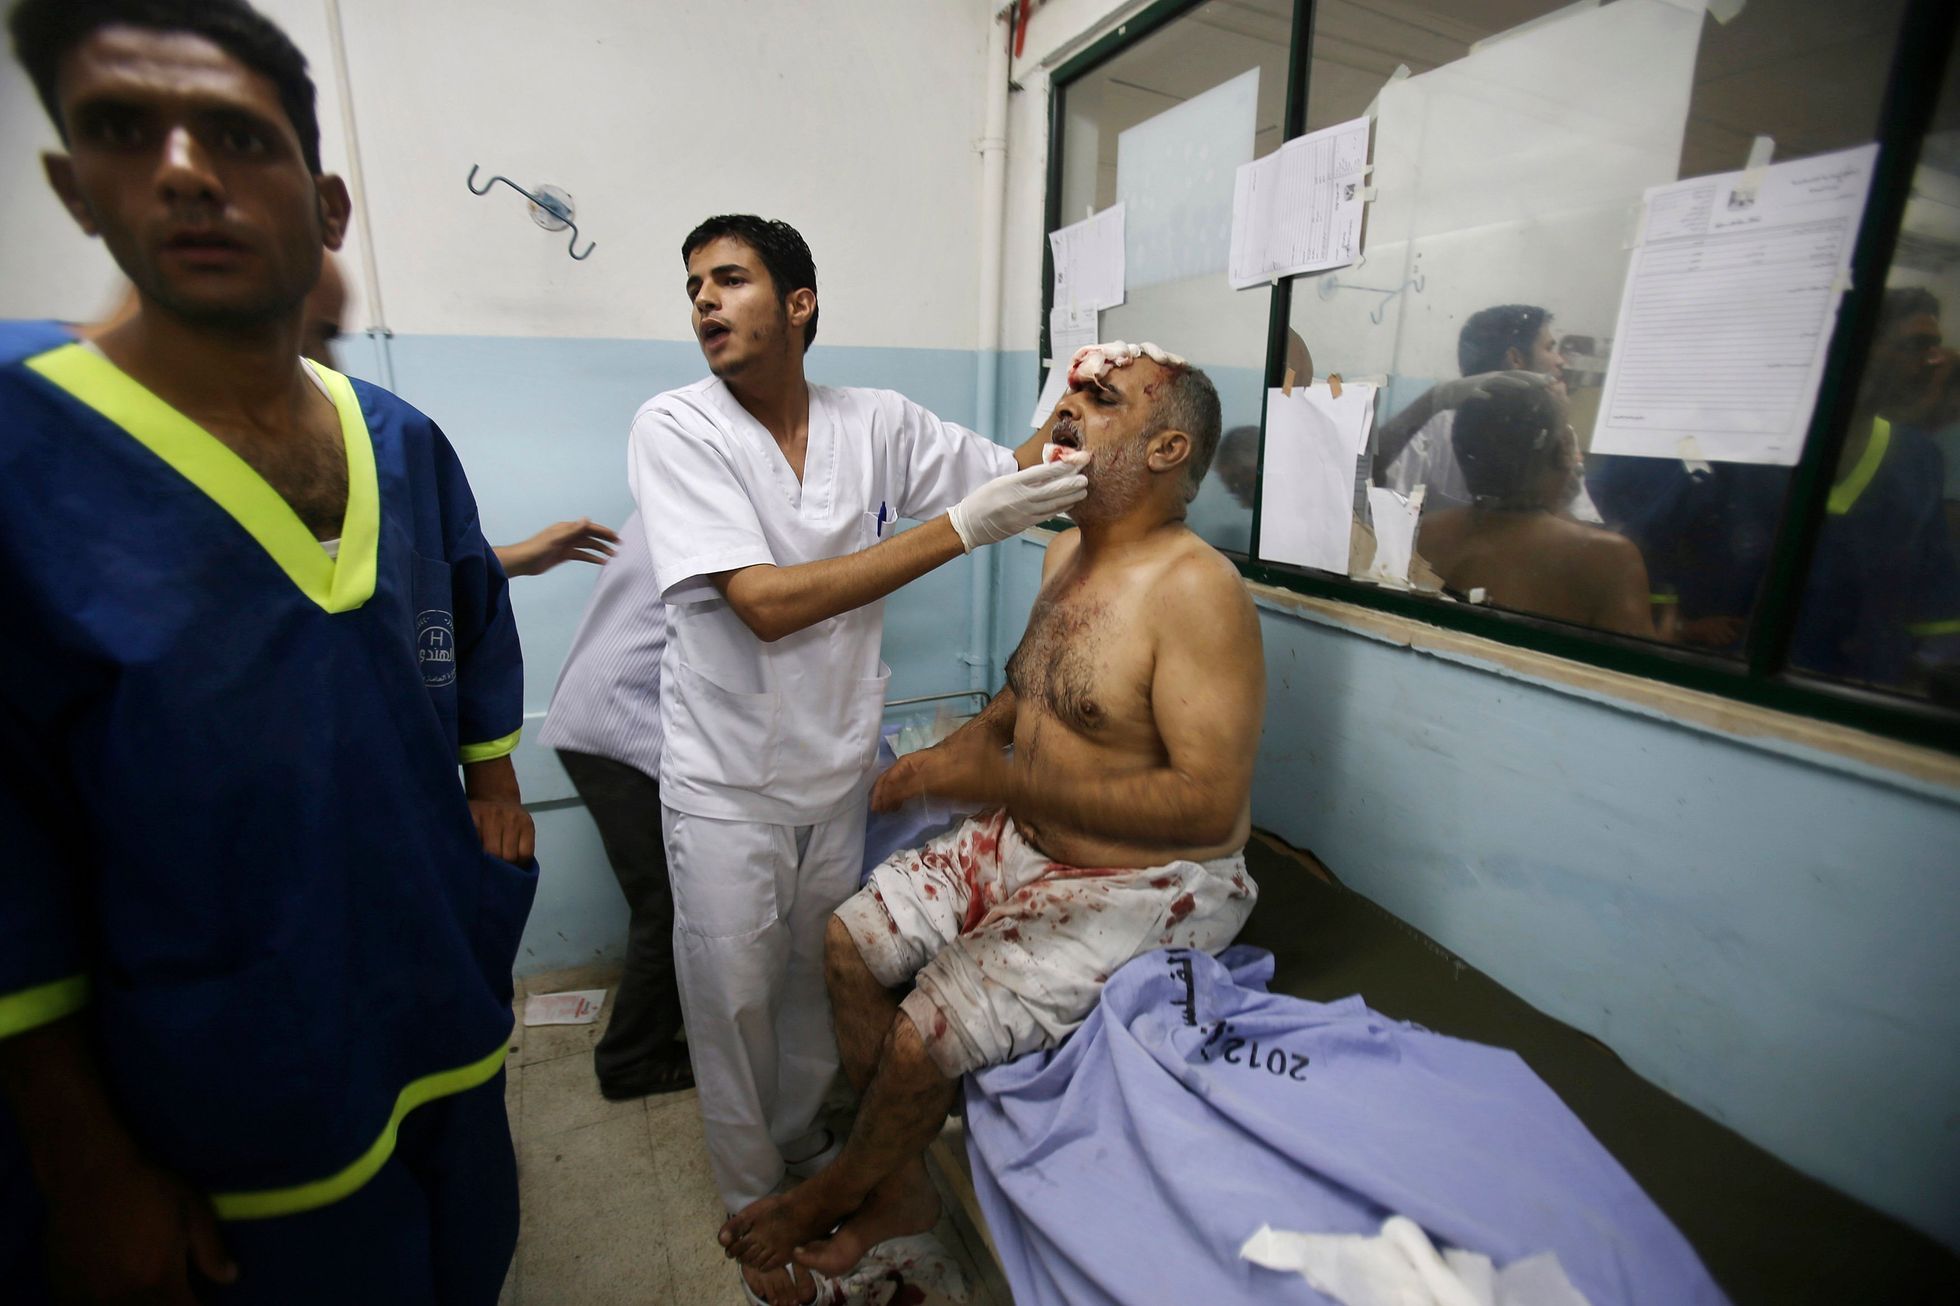 Muž - gaza - palestina - izrael - zranění